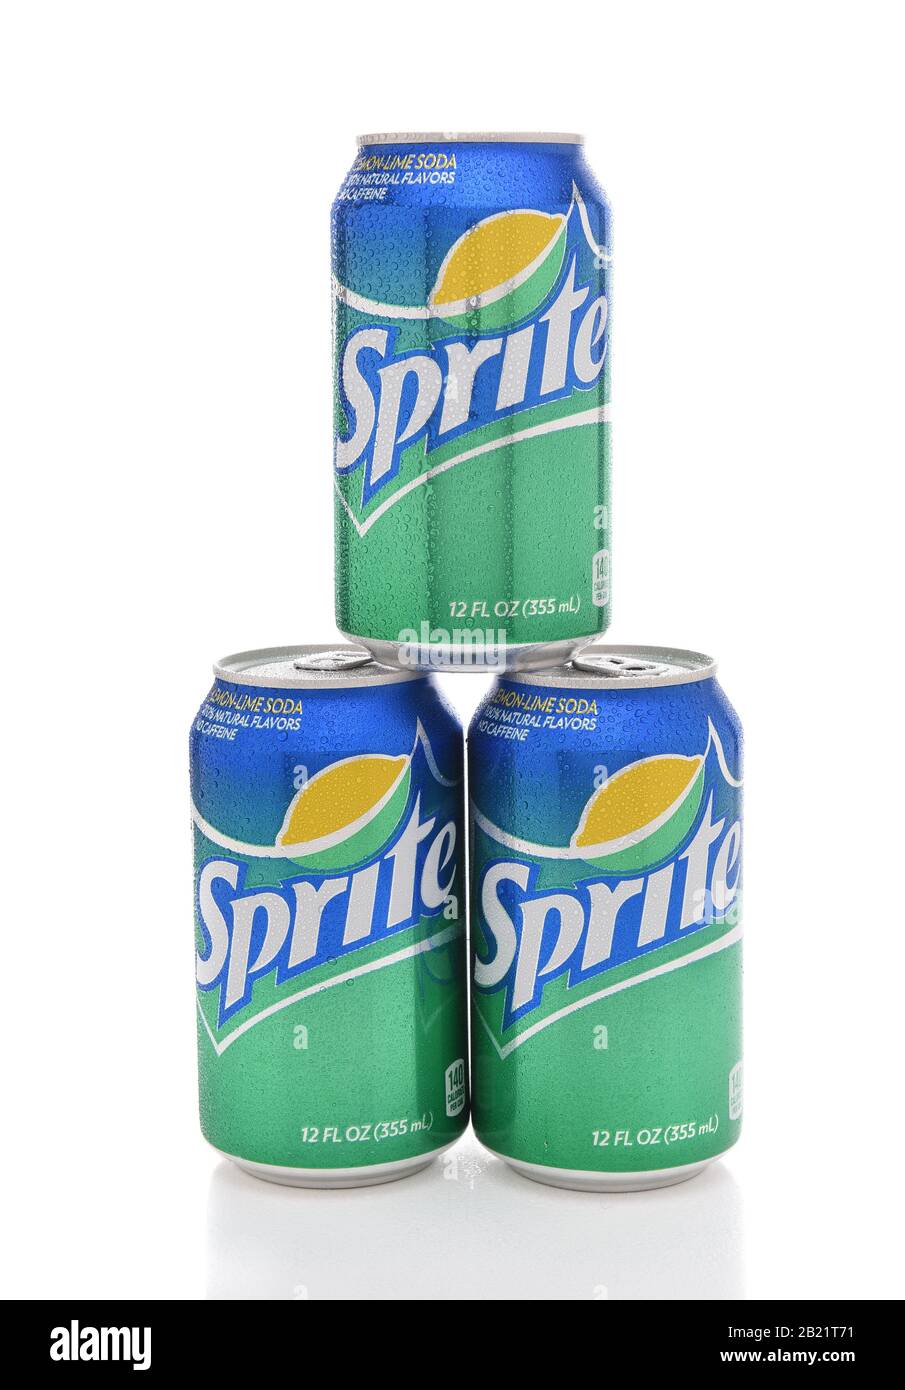 Irvine, CALIFORNIE - 10 JUILLET 2017 : trois Cannettes de Sprite à condensation. L'sprite est une boisson non alcoolisée au citron vert du Coca-Cola Comapny. Banque D'Images